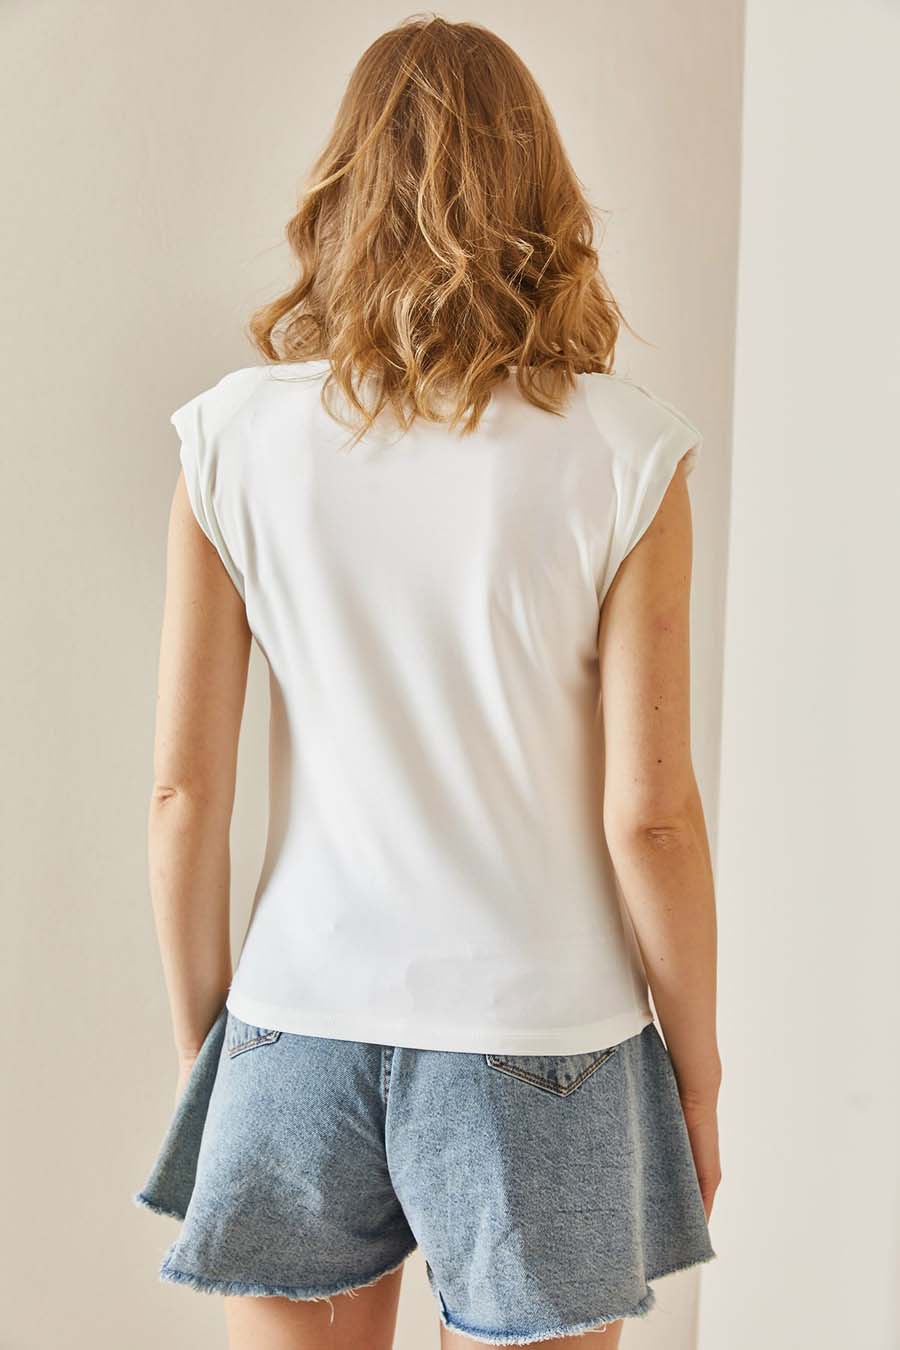 Γυναικεία μπλούζα Summer, Λευκό 6